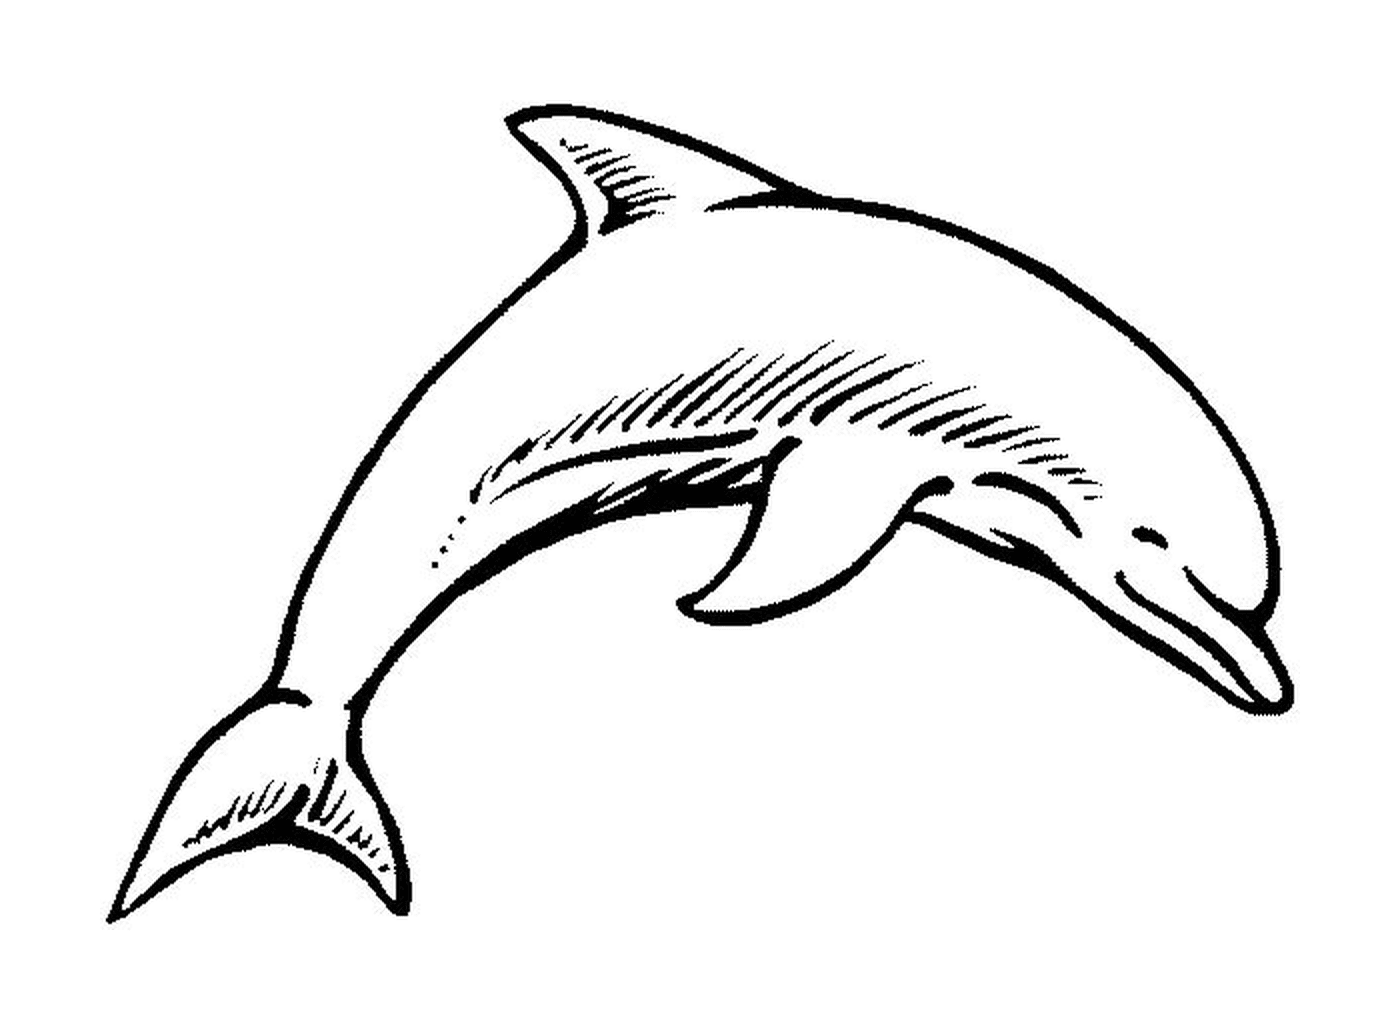  Ein Delphin 